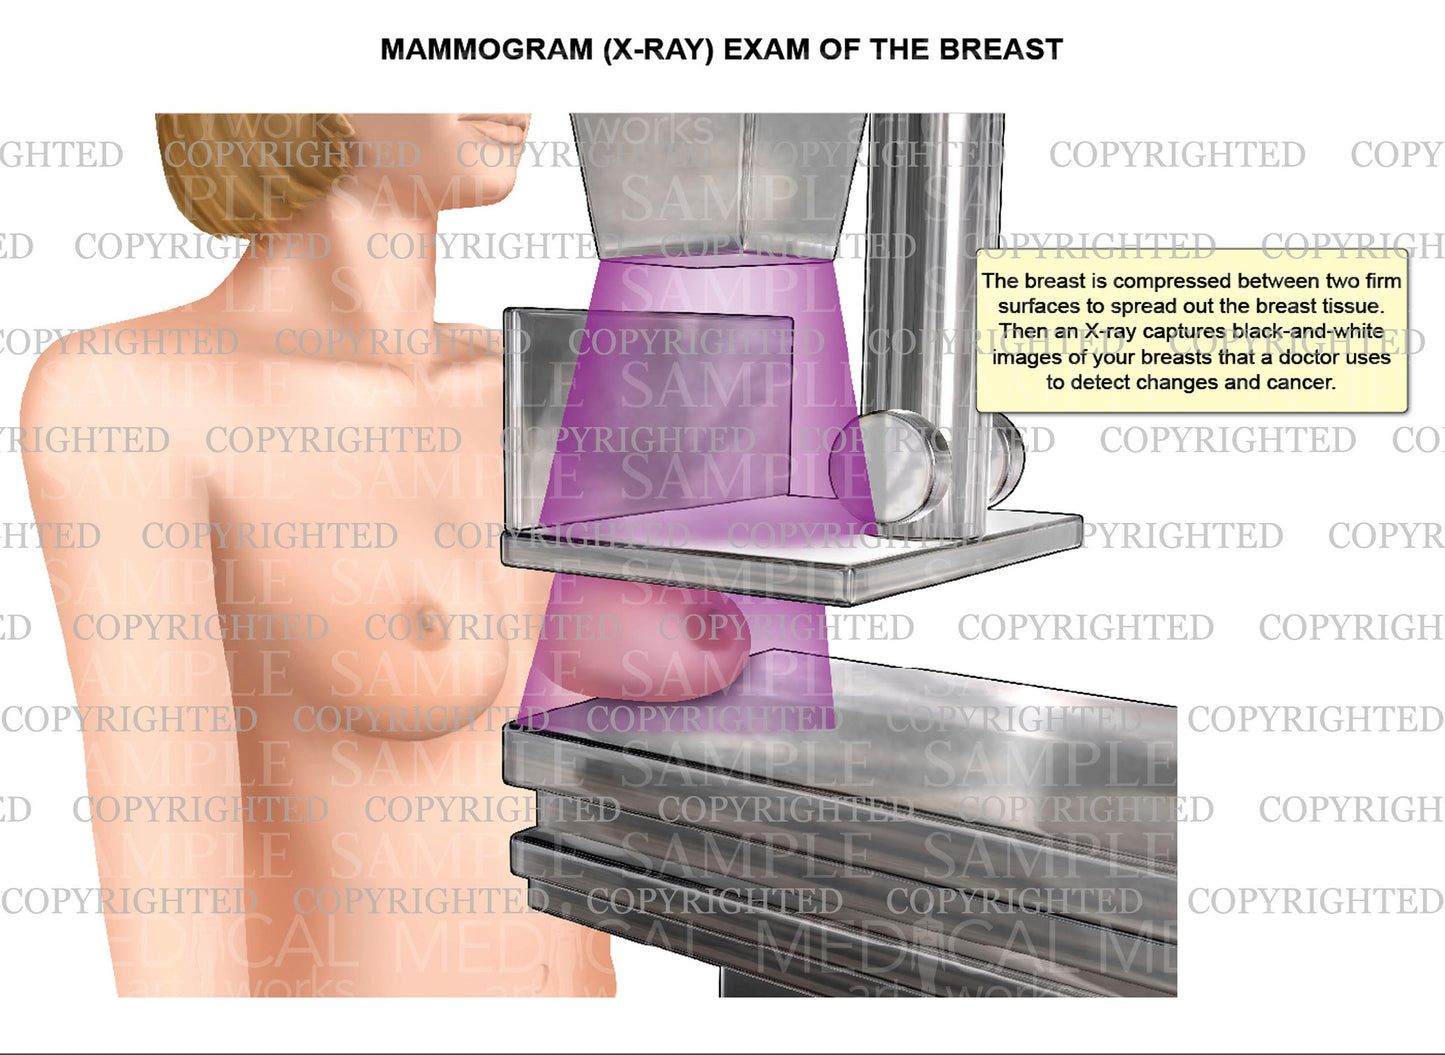 Mammogram (x-ray) exam of the breast